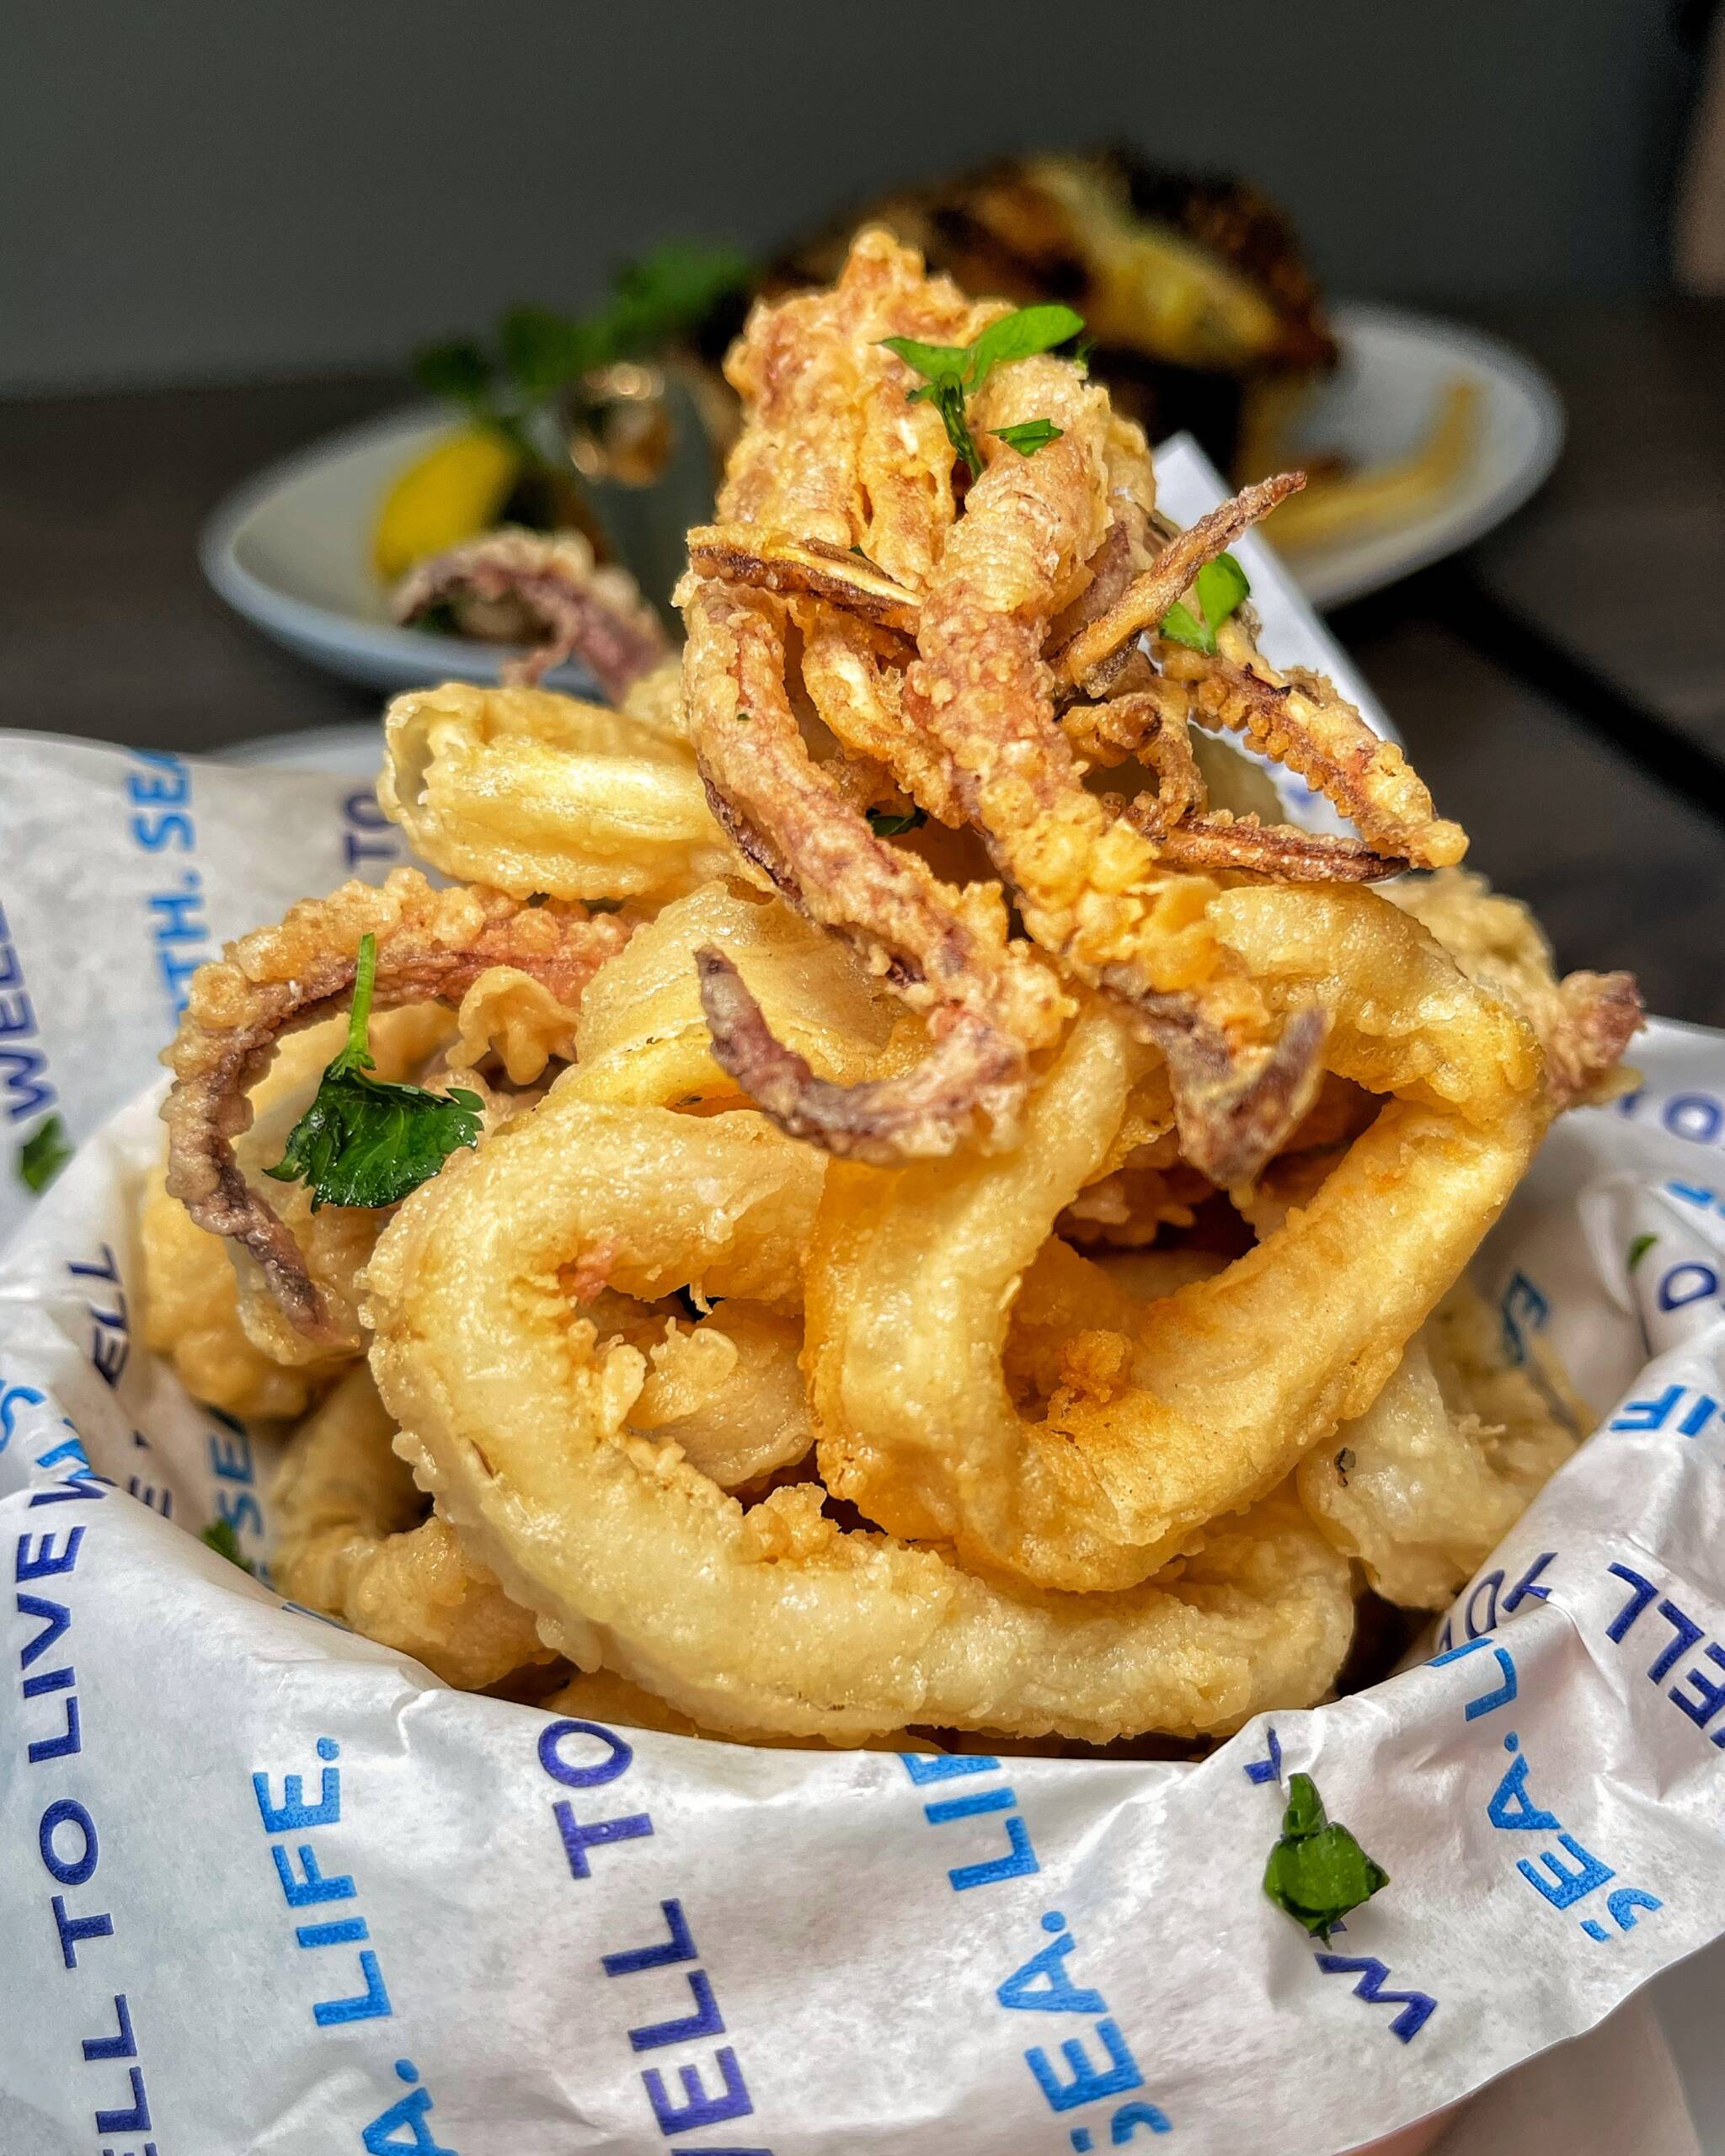 Flash fried calamari served with marinara sauce.